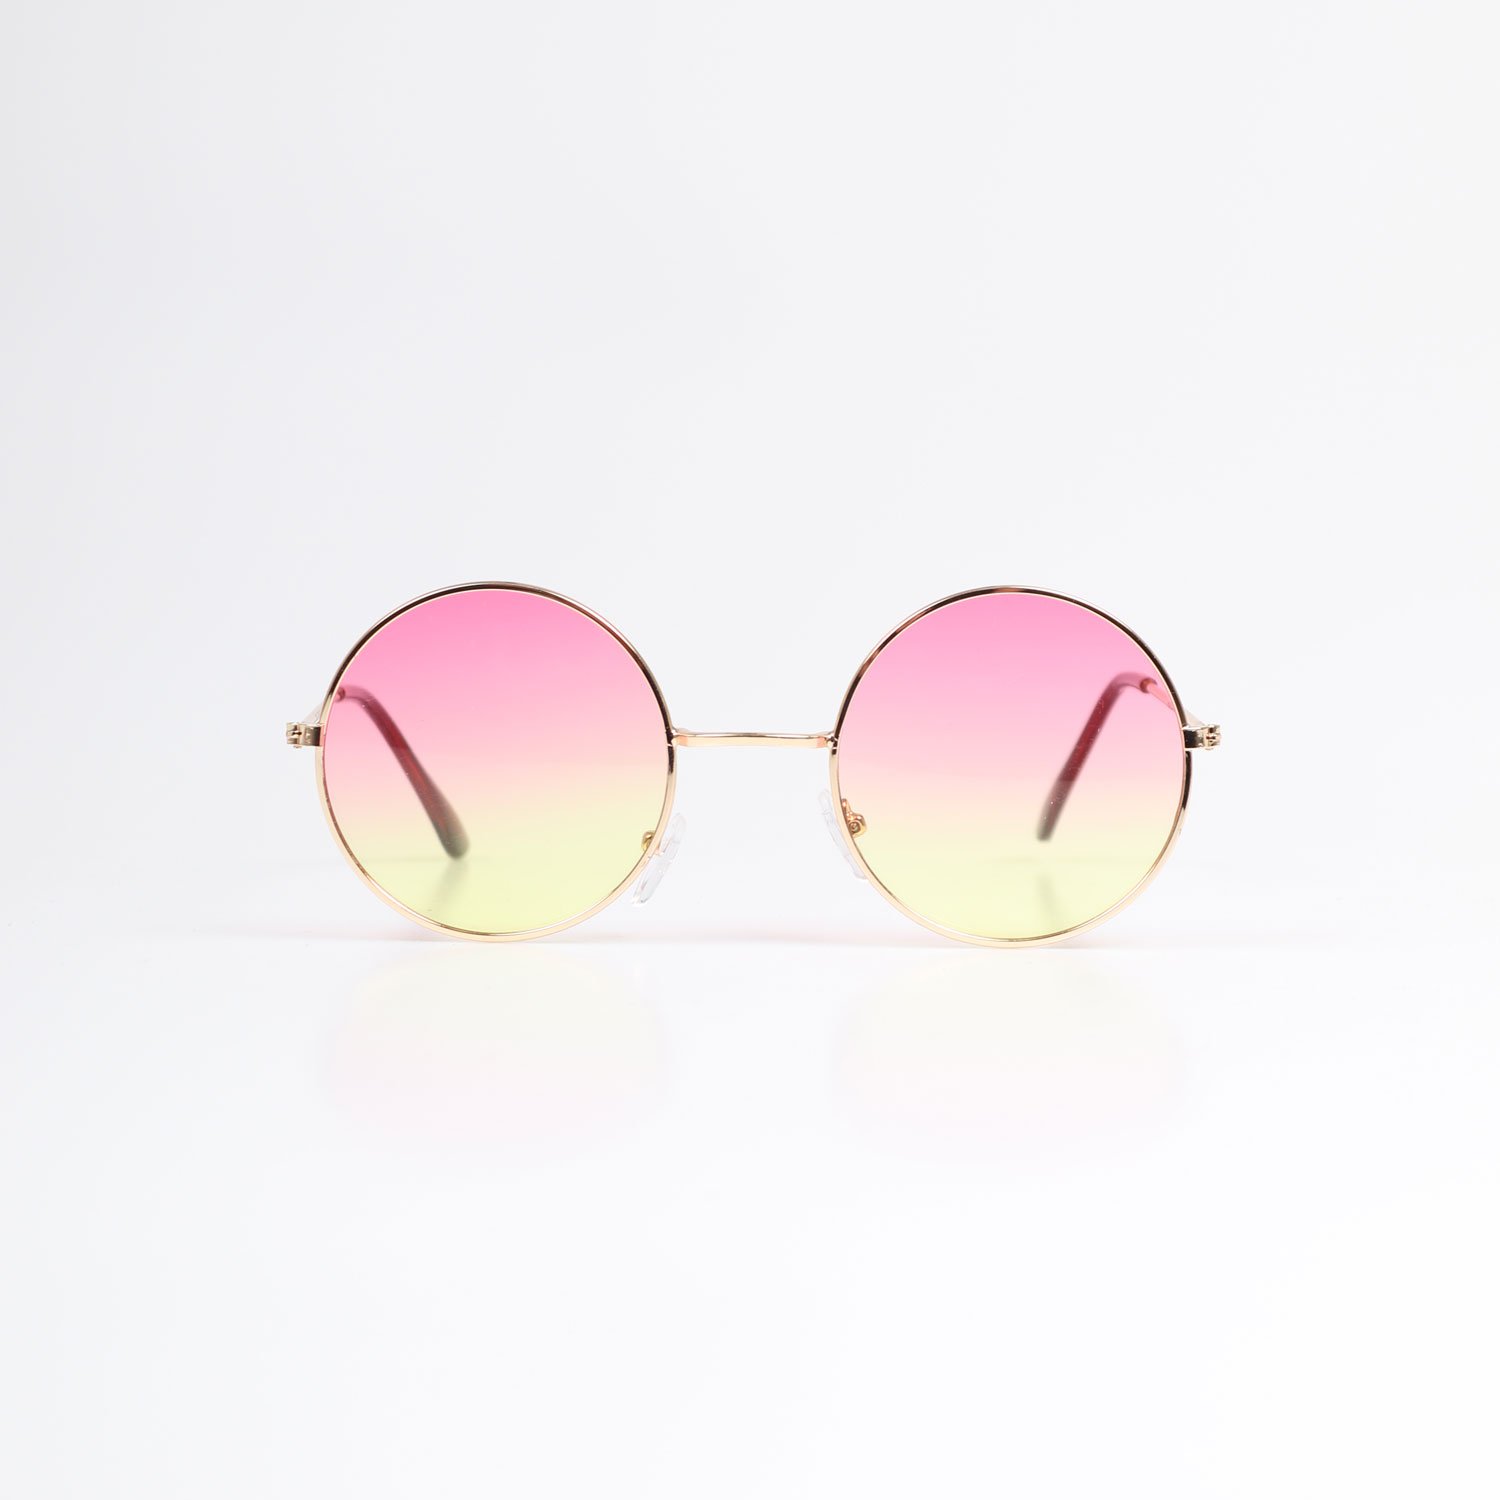 Masterpiece Round Sunglasses - Orange Faded Lenses/Orange